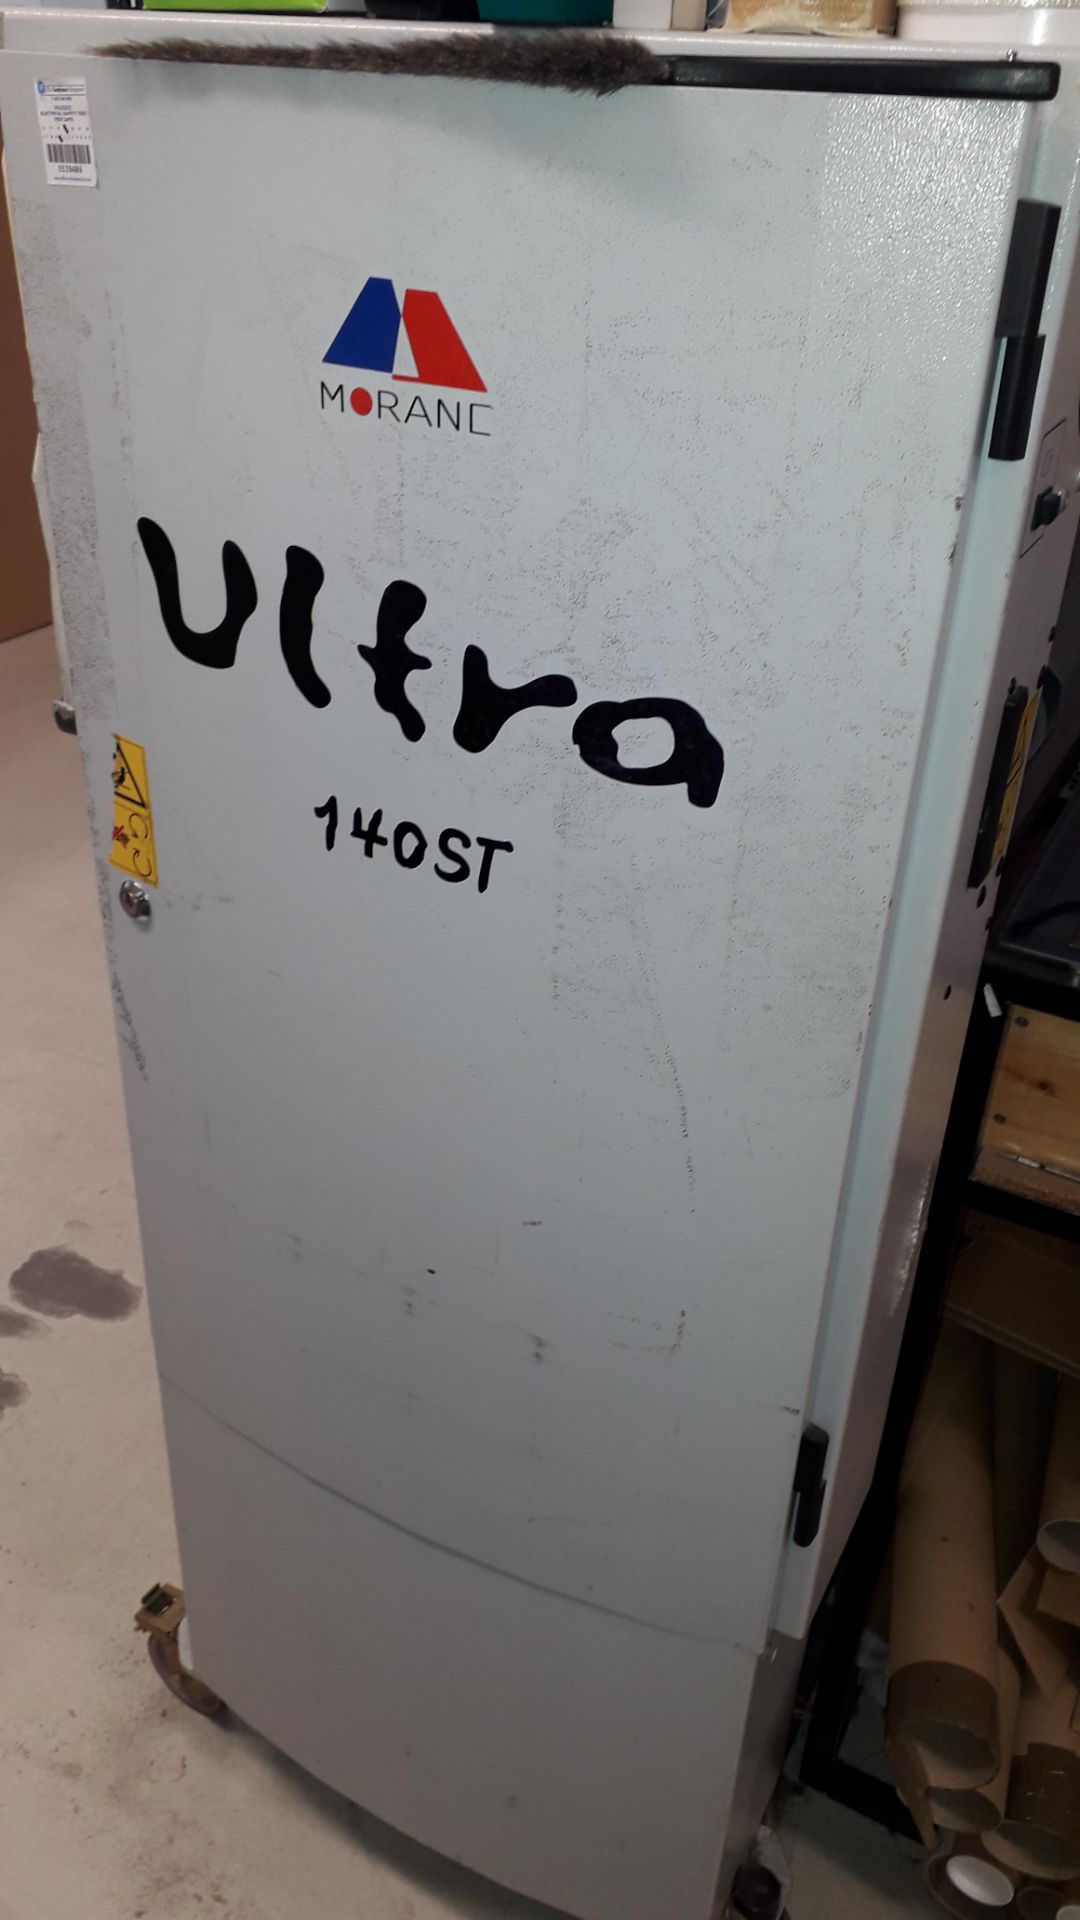 Morane Ultra DEN 140ST Encapsulator, serial number D8N 140186 - Image 3 of 4